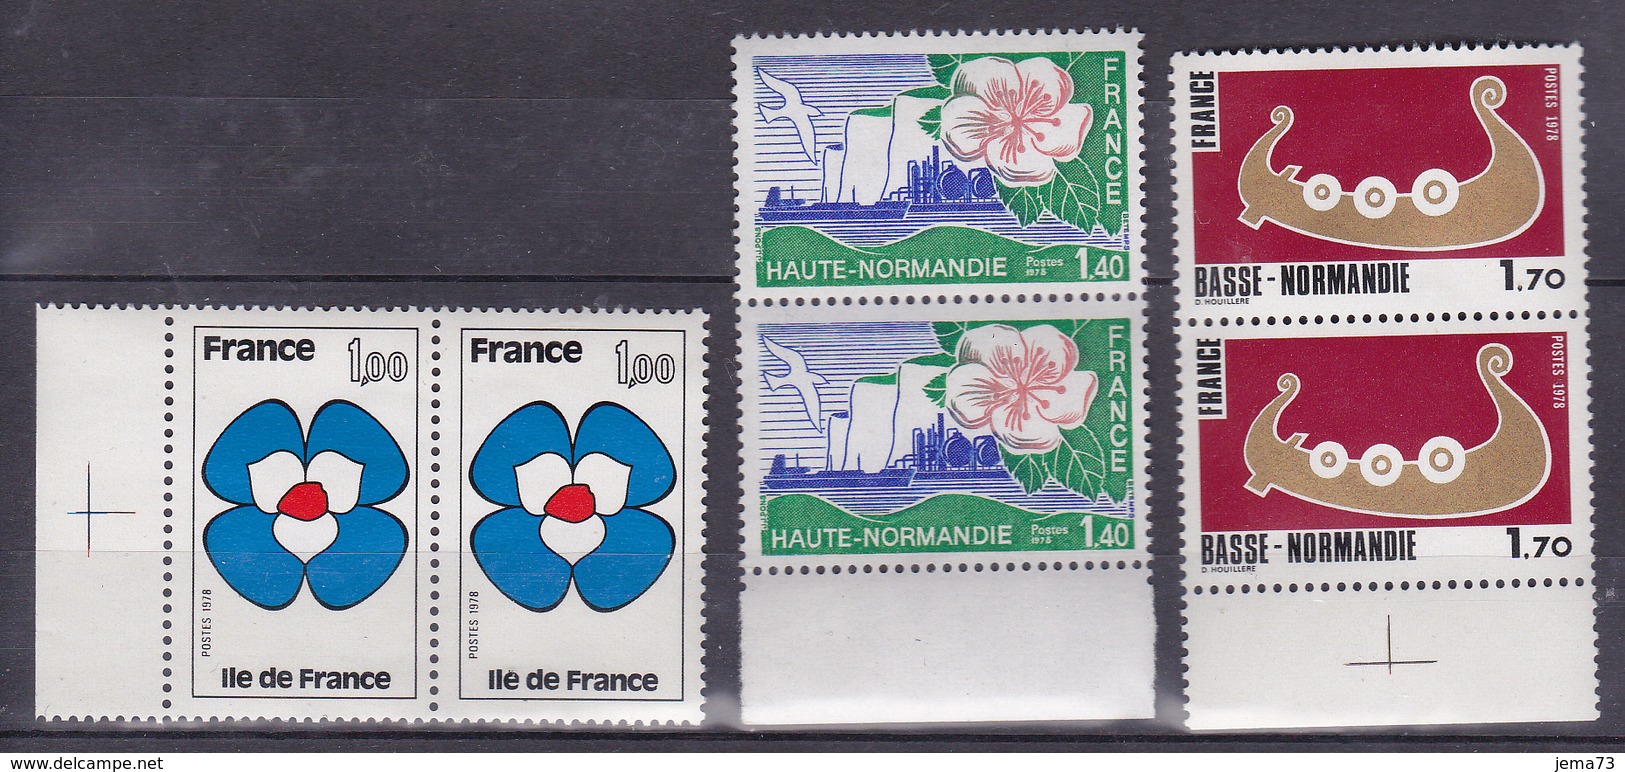 N° 1991 à 1993 Série Régions Ile-de-France Haute Normandie Basse Normandie: Série En Paire De 2 Timbres Neuf Impeccable - Ongebruikt